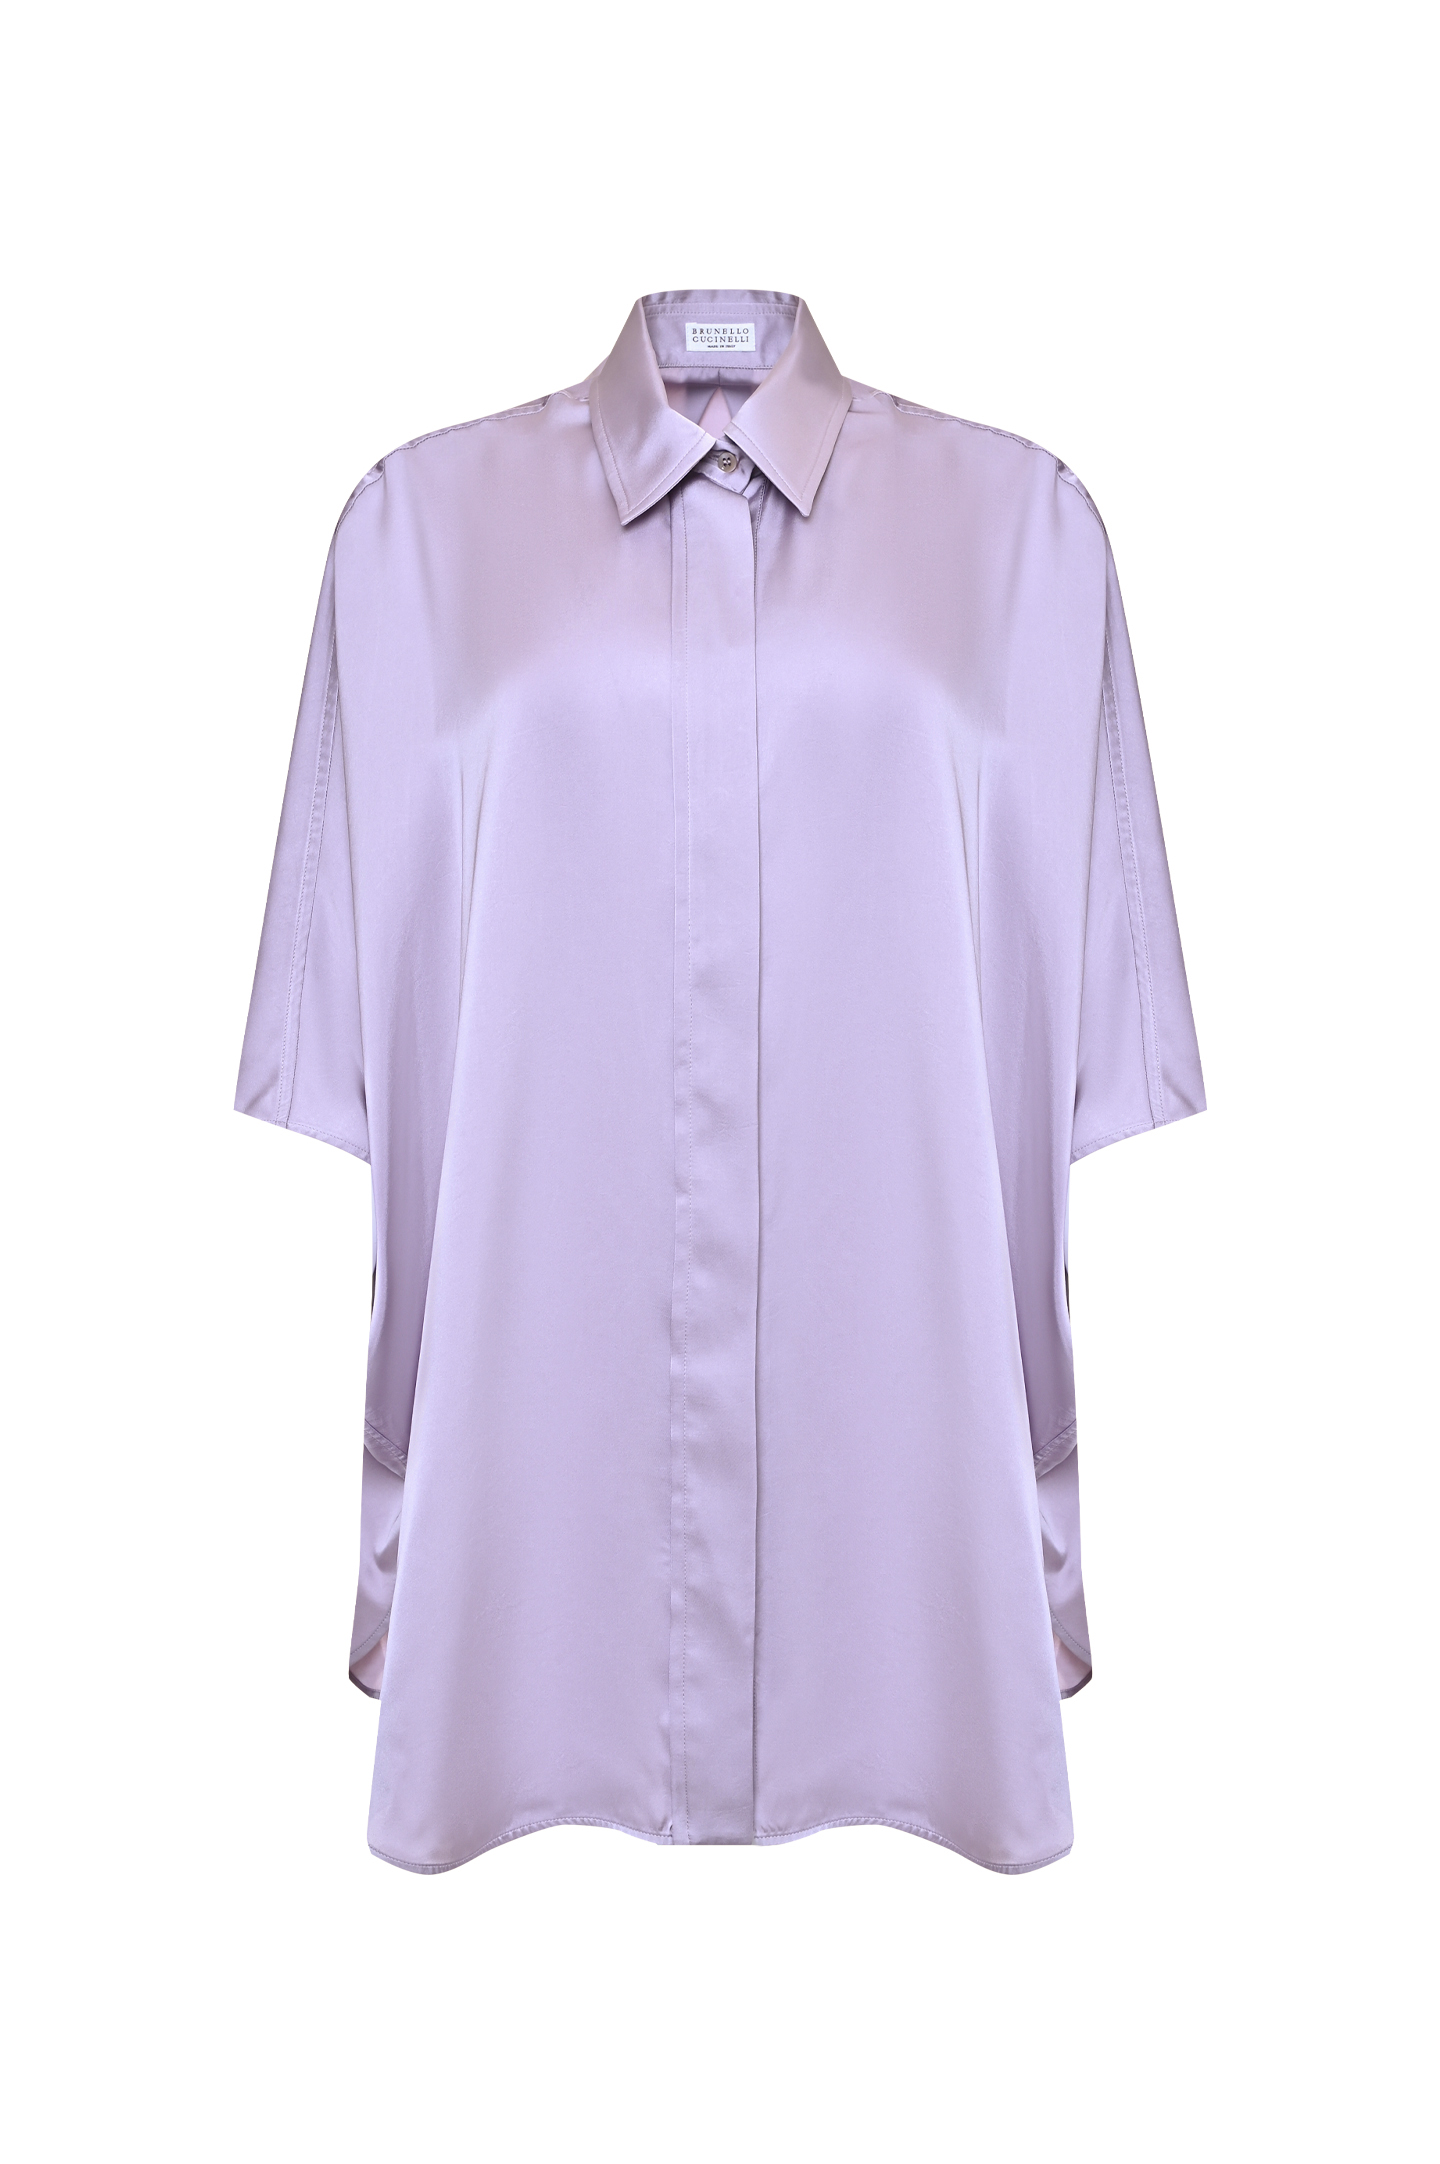 Блуза BRUNELLO  CUCINELLI ML172B1091, цвет: Сиреневый, Женский